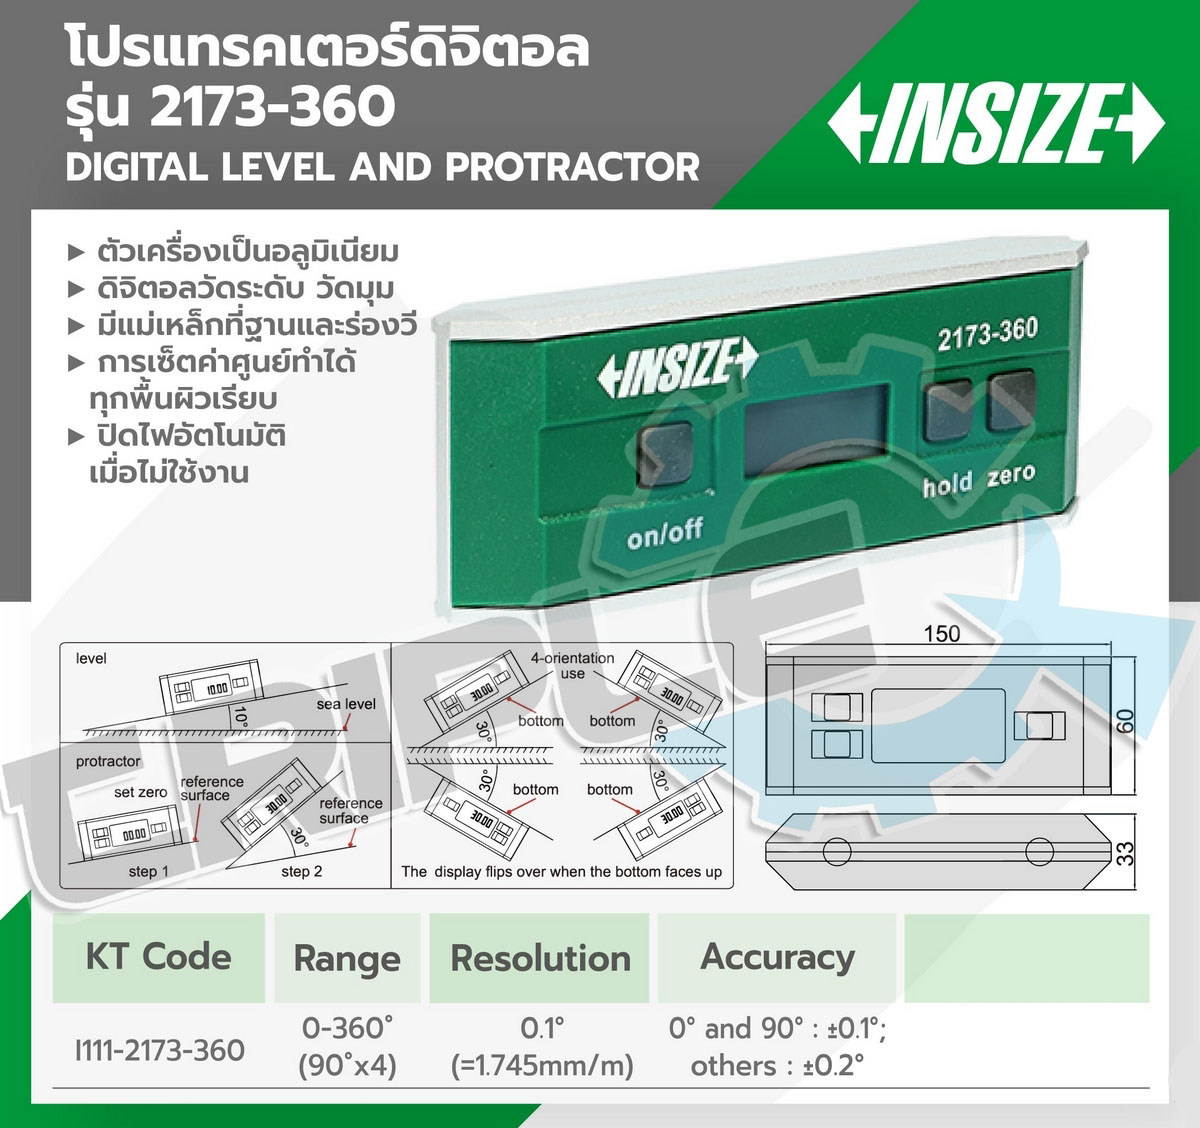 INSIZE - เครื่องวัดระดับน้ำดิจิตอล โปรแทรคเตอร์ (Digital Level and Protractor)รุ่น 2173-360 ช่วงระยะวัด 0-360 องศา ความละเอียด 0.1 องศา มาตรฐานการป้องกัน IP54 ดิจิตอลวัดมุมได้ วัดระดับได้